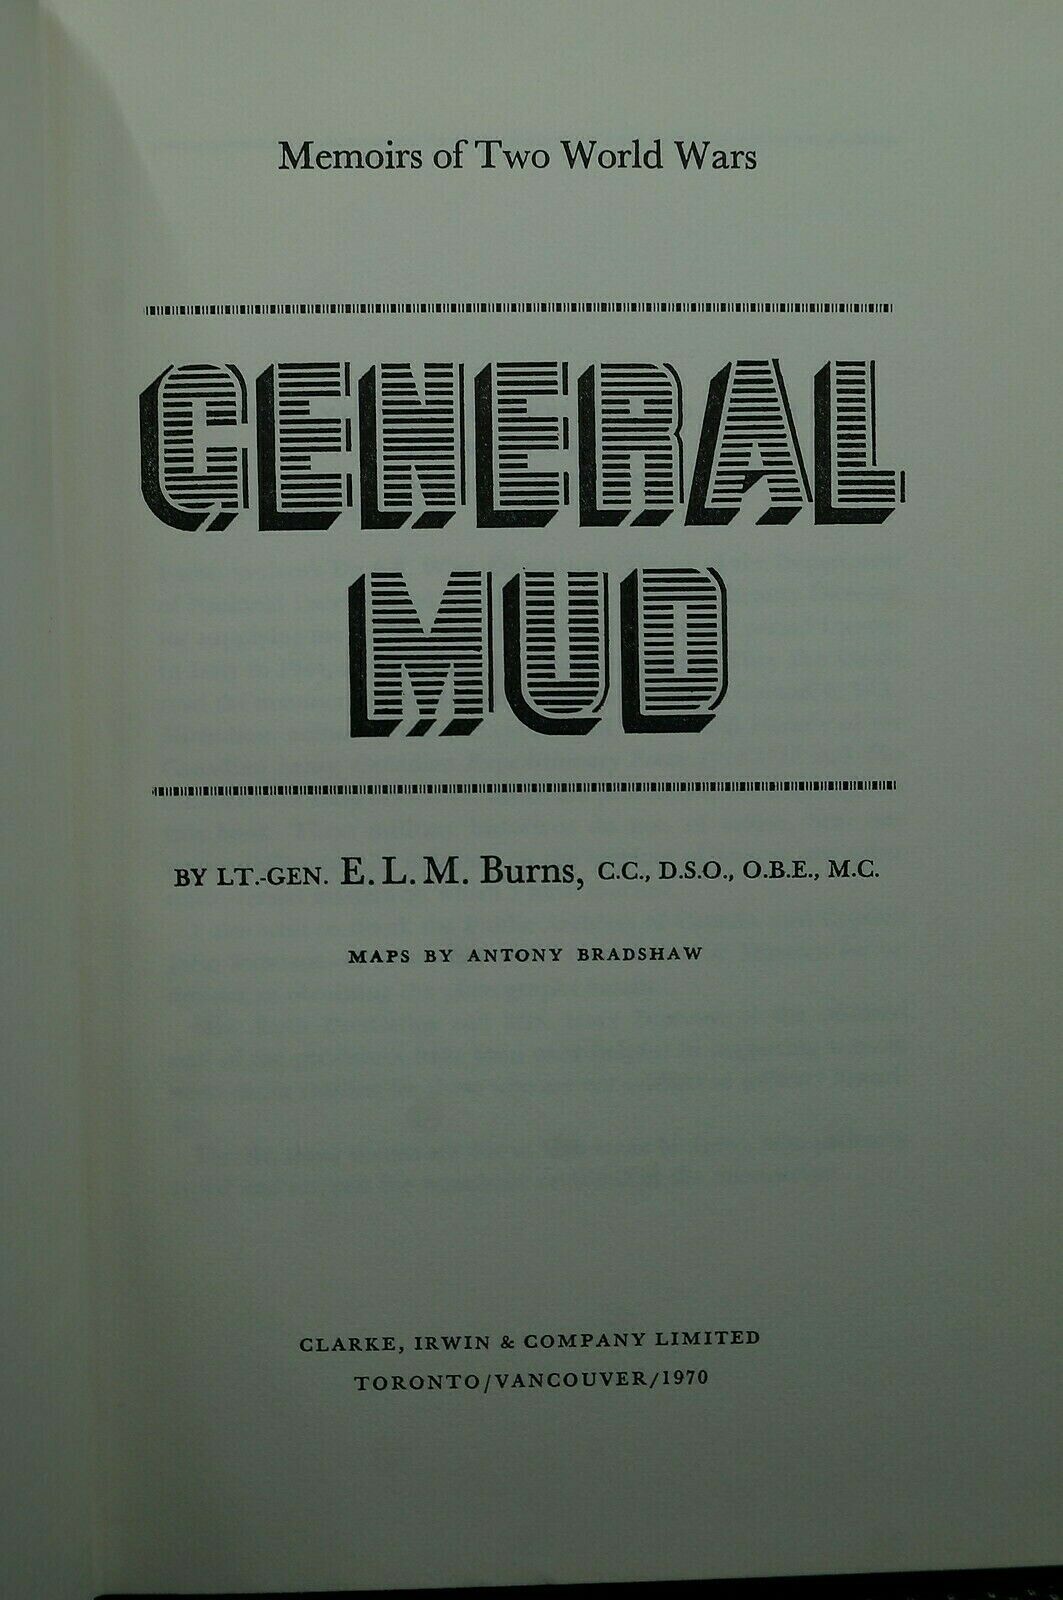 Ww1 Ww2 Canadian Cef General Mud Memoirs Of Two World Wars